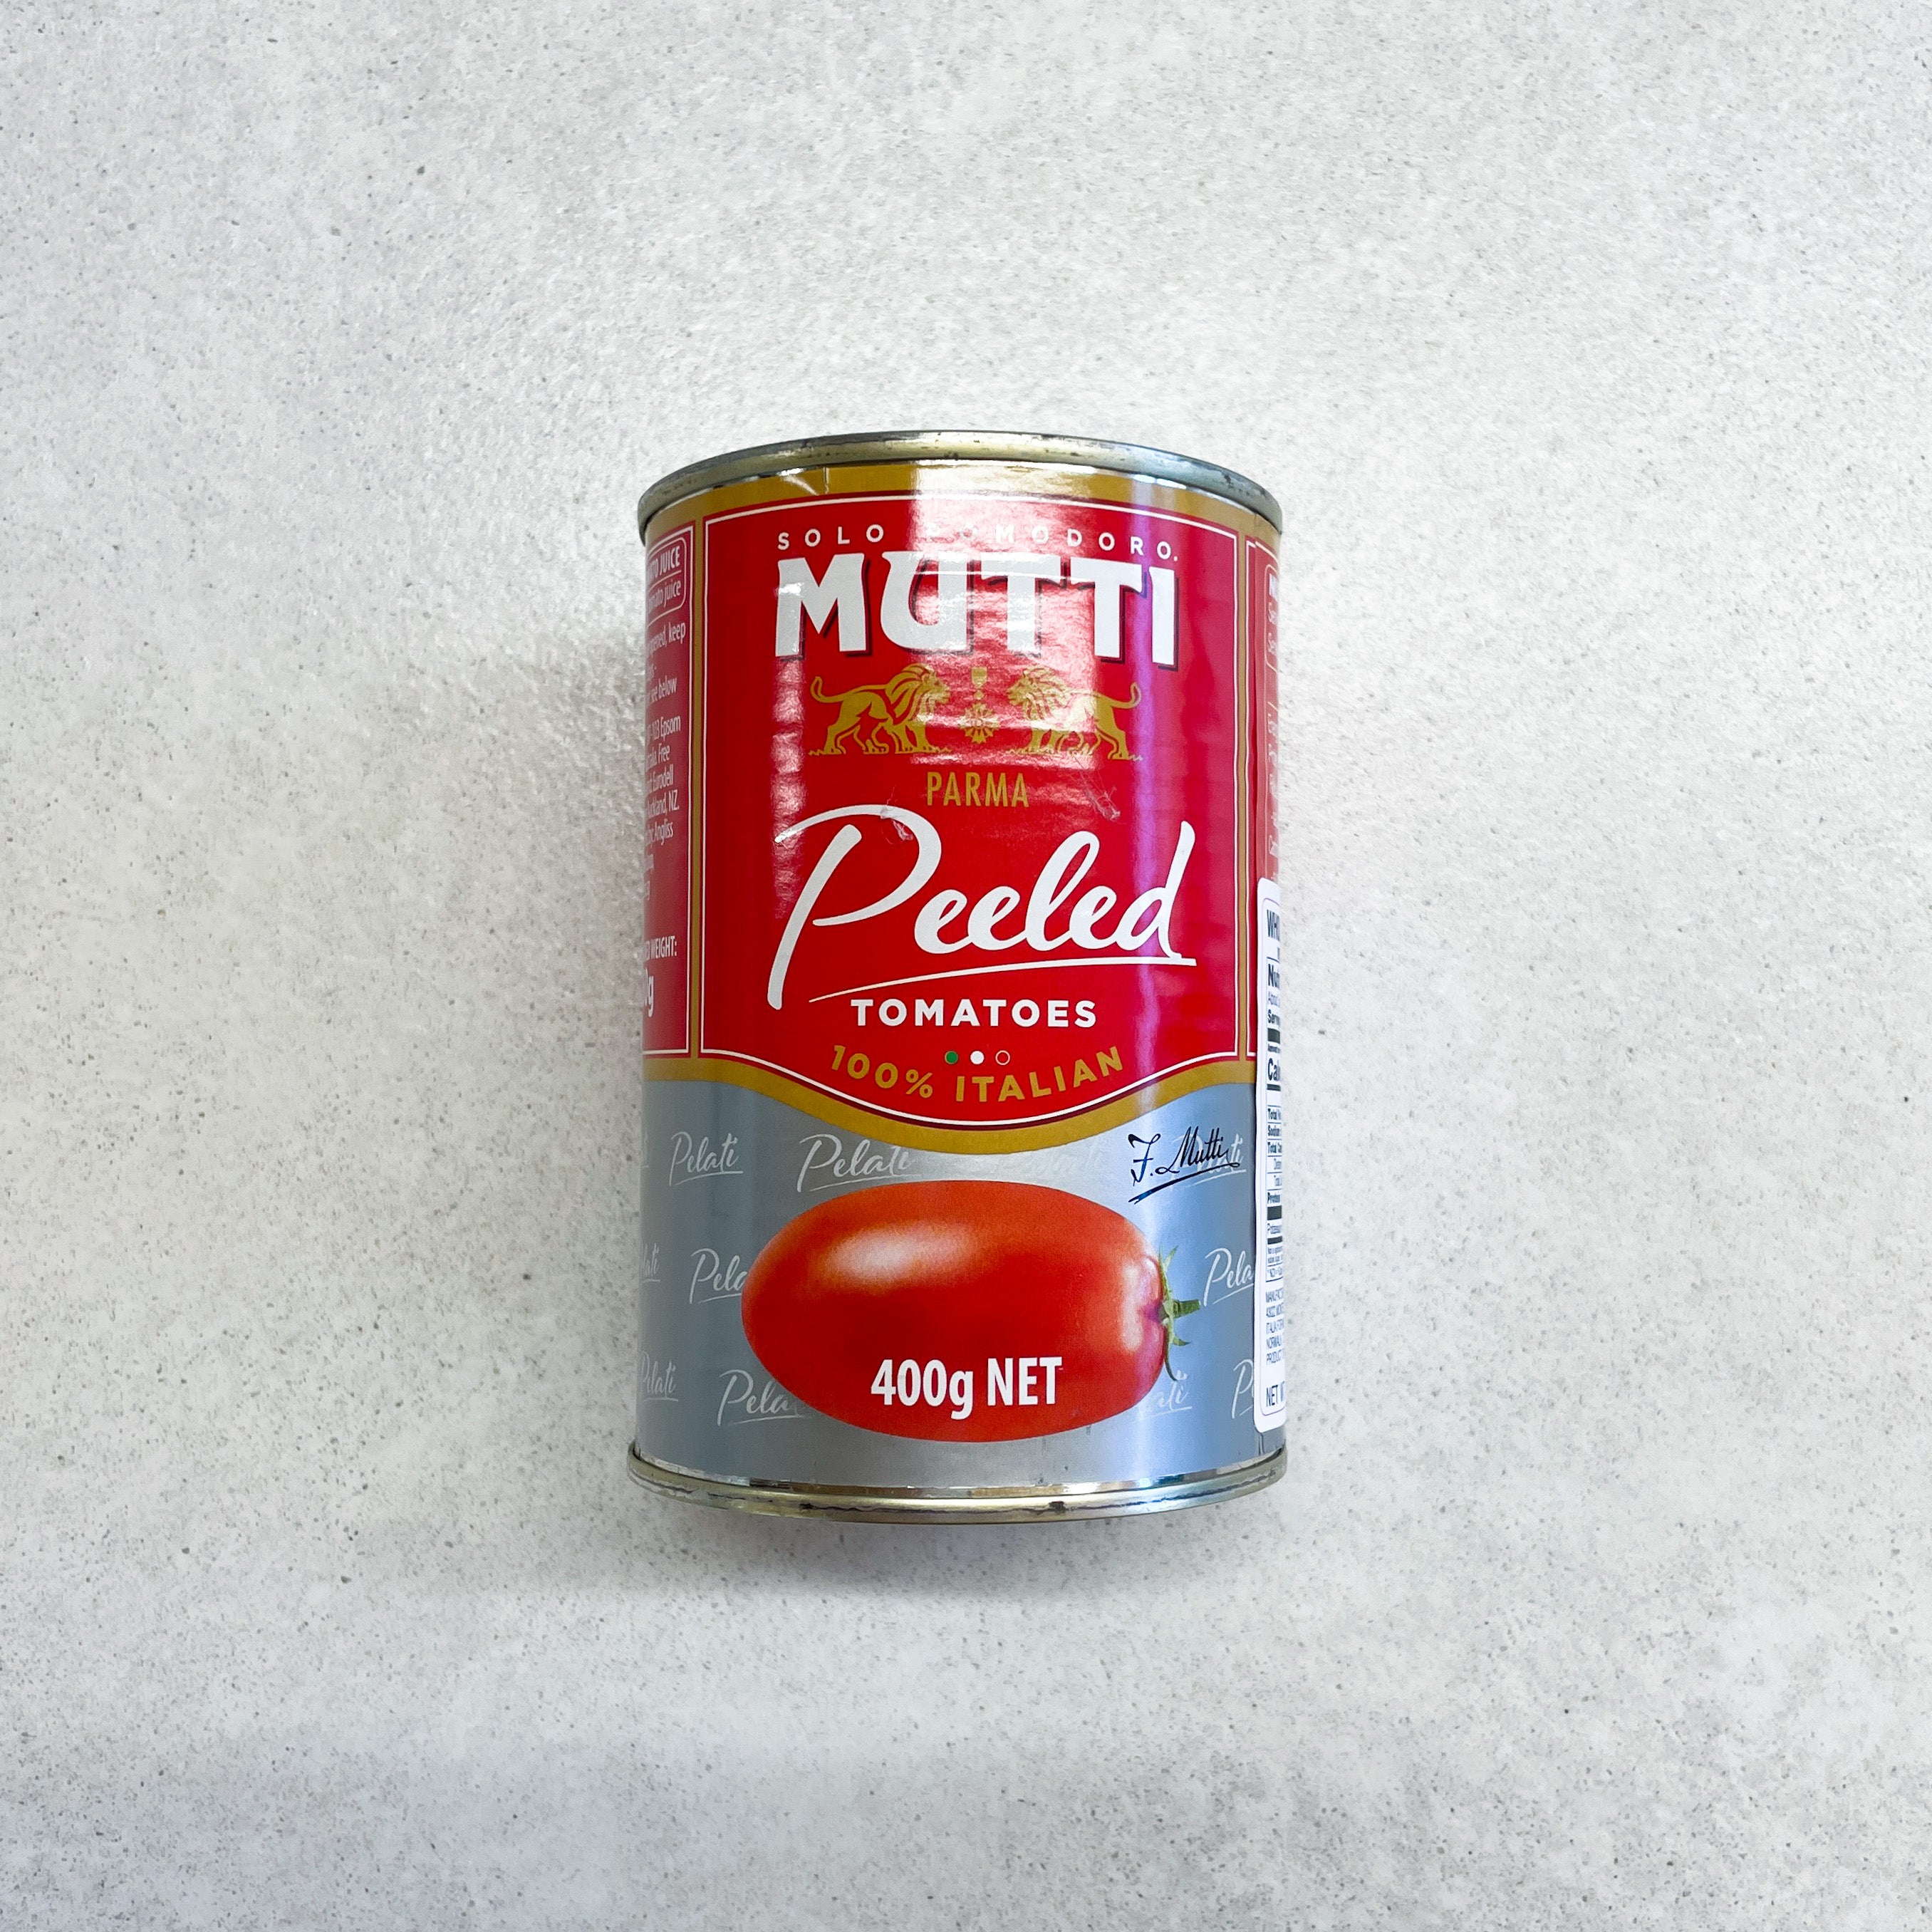 Mutti Whole Peeled Tomatoes